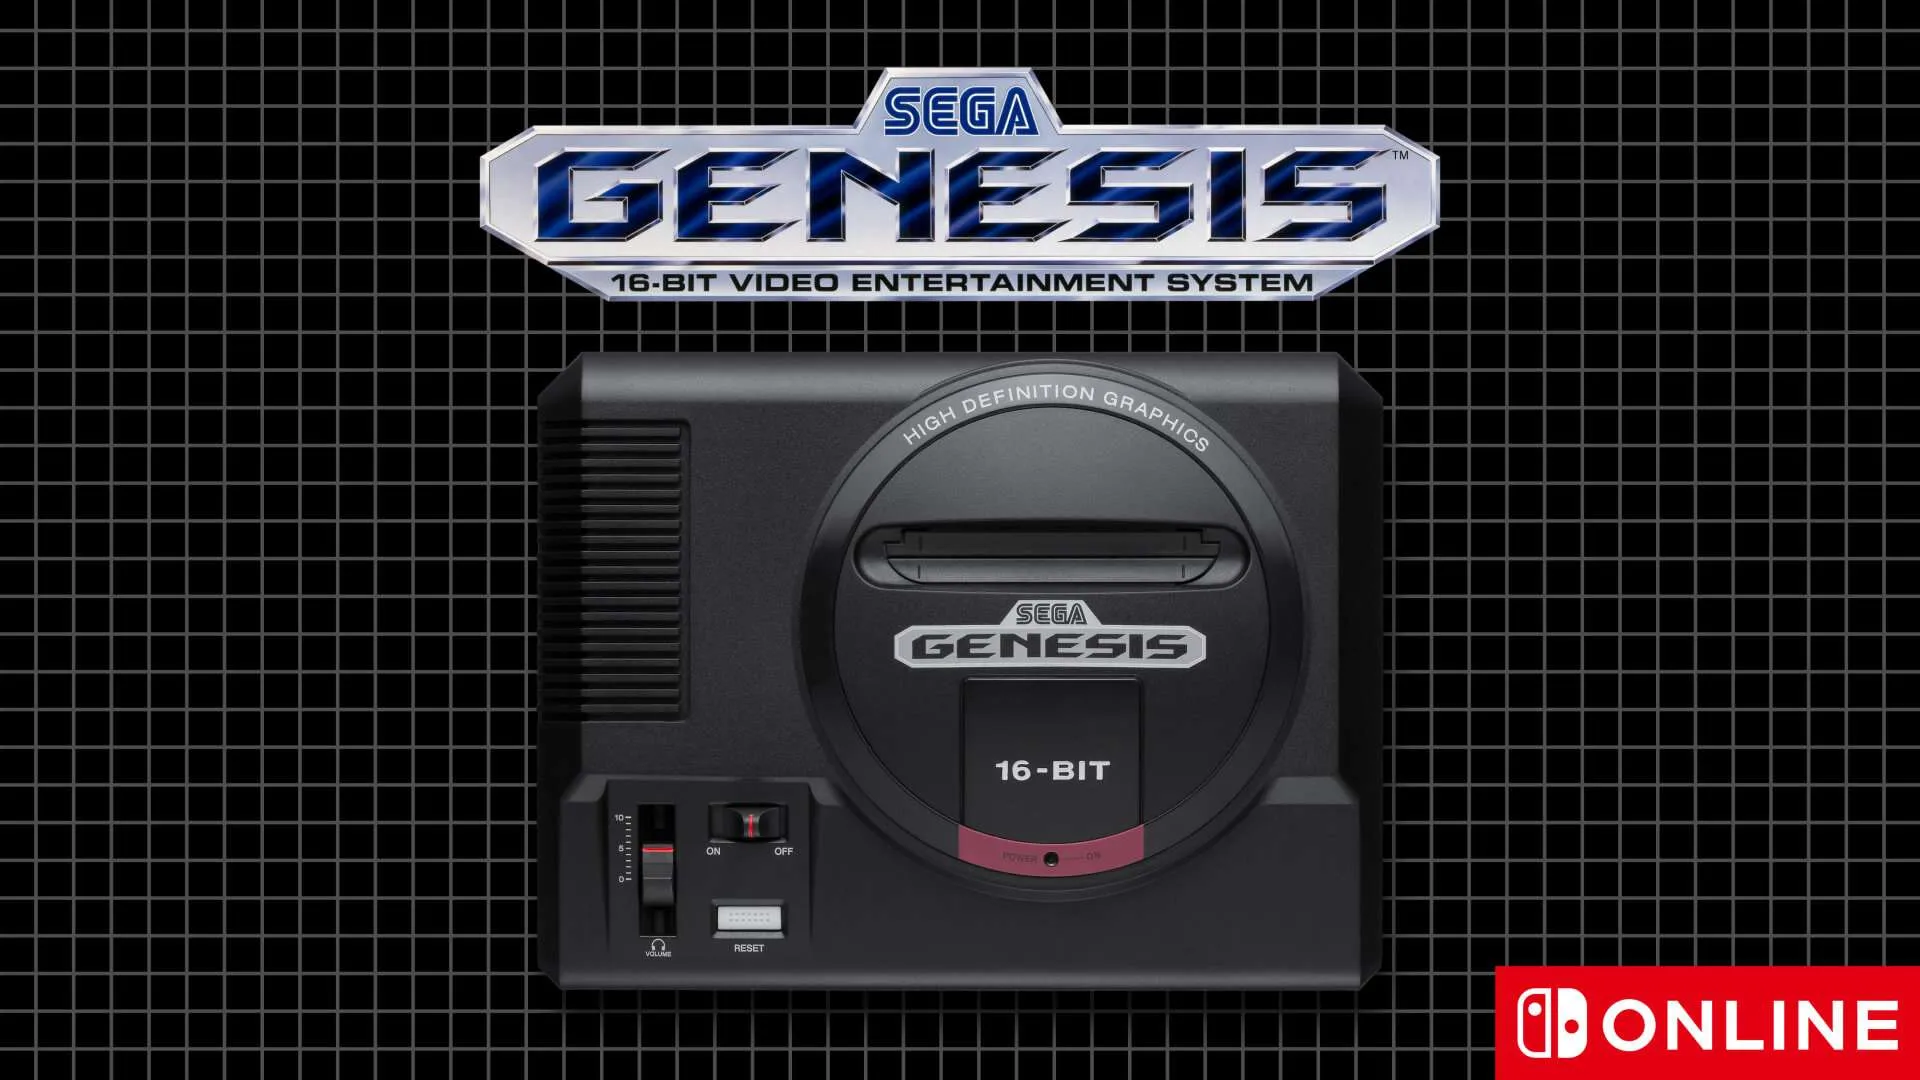 Sega Genesis Switch Online Expansion Pack